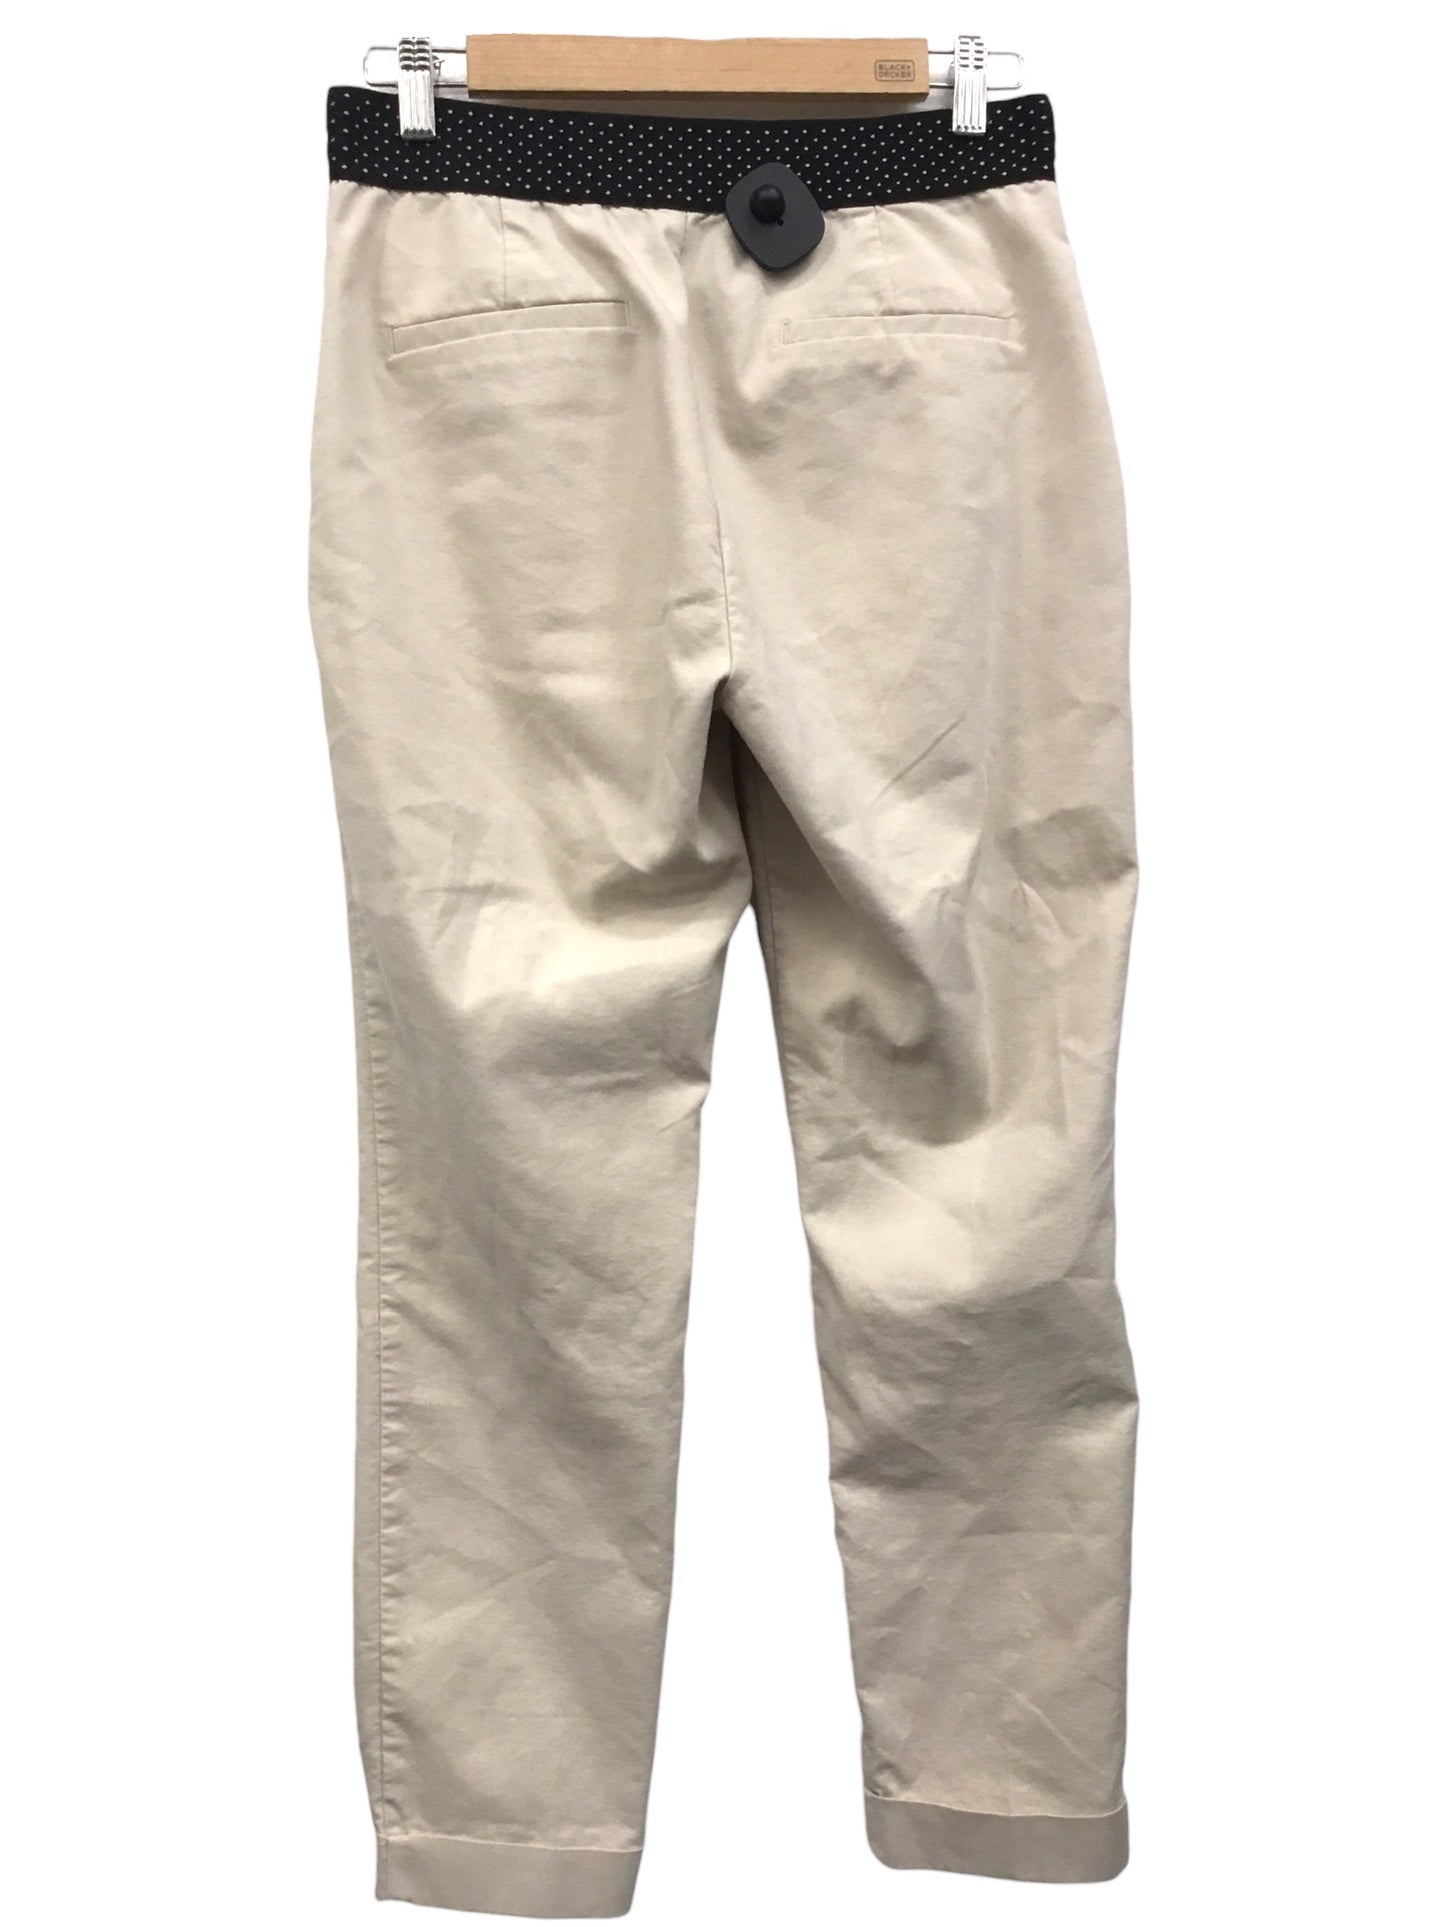 Pants Chinos & Khakis By Zara  Size: M